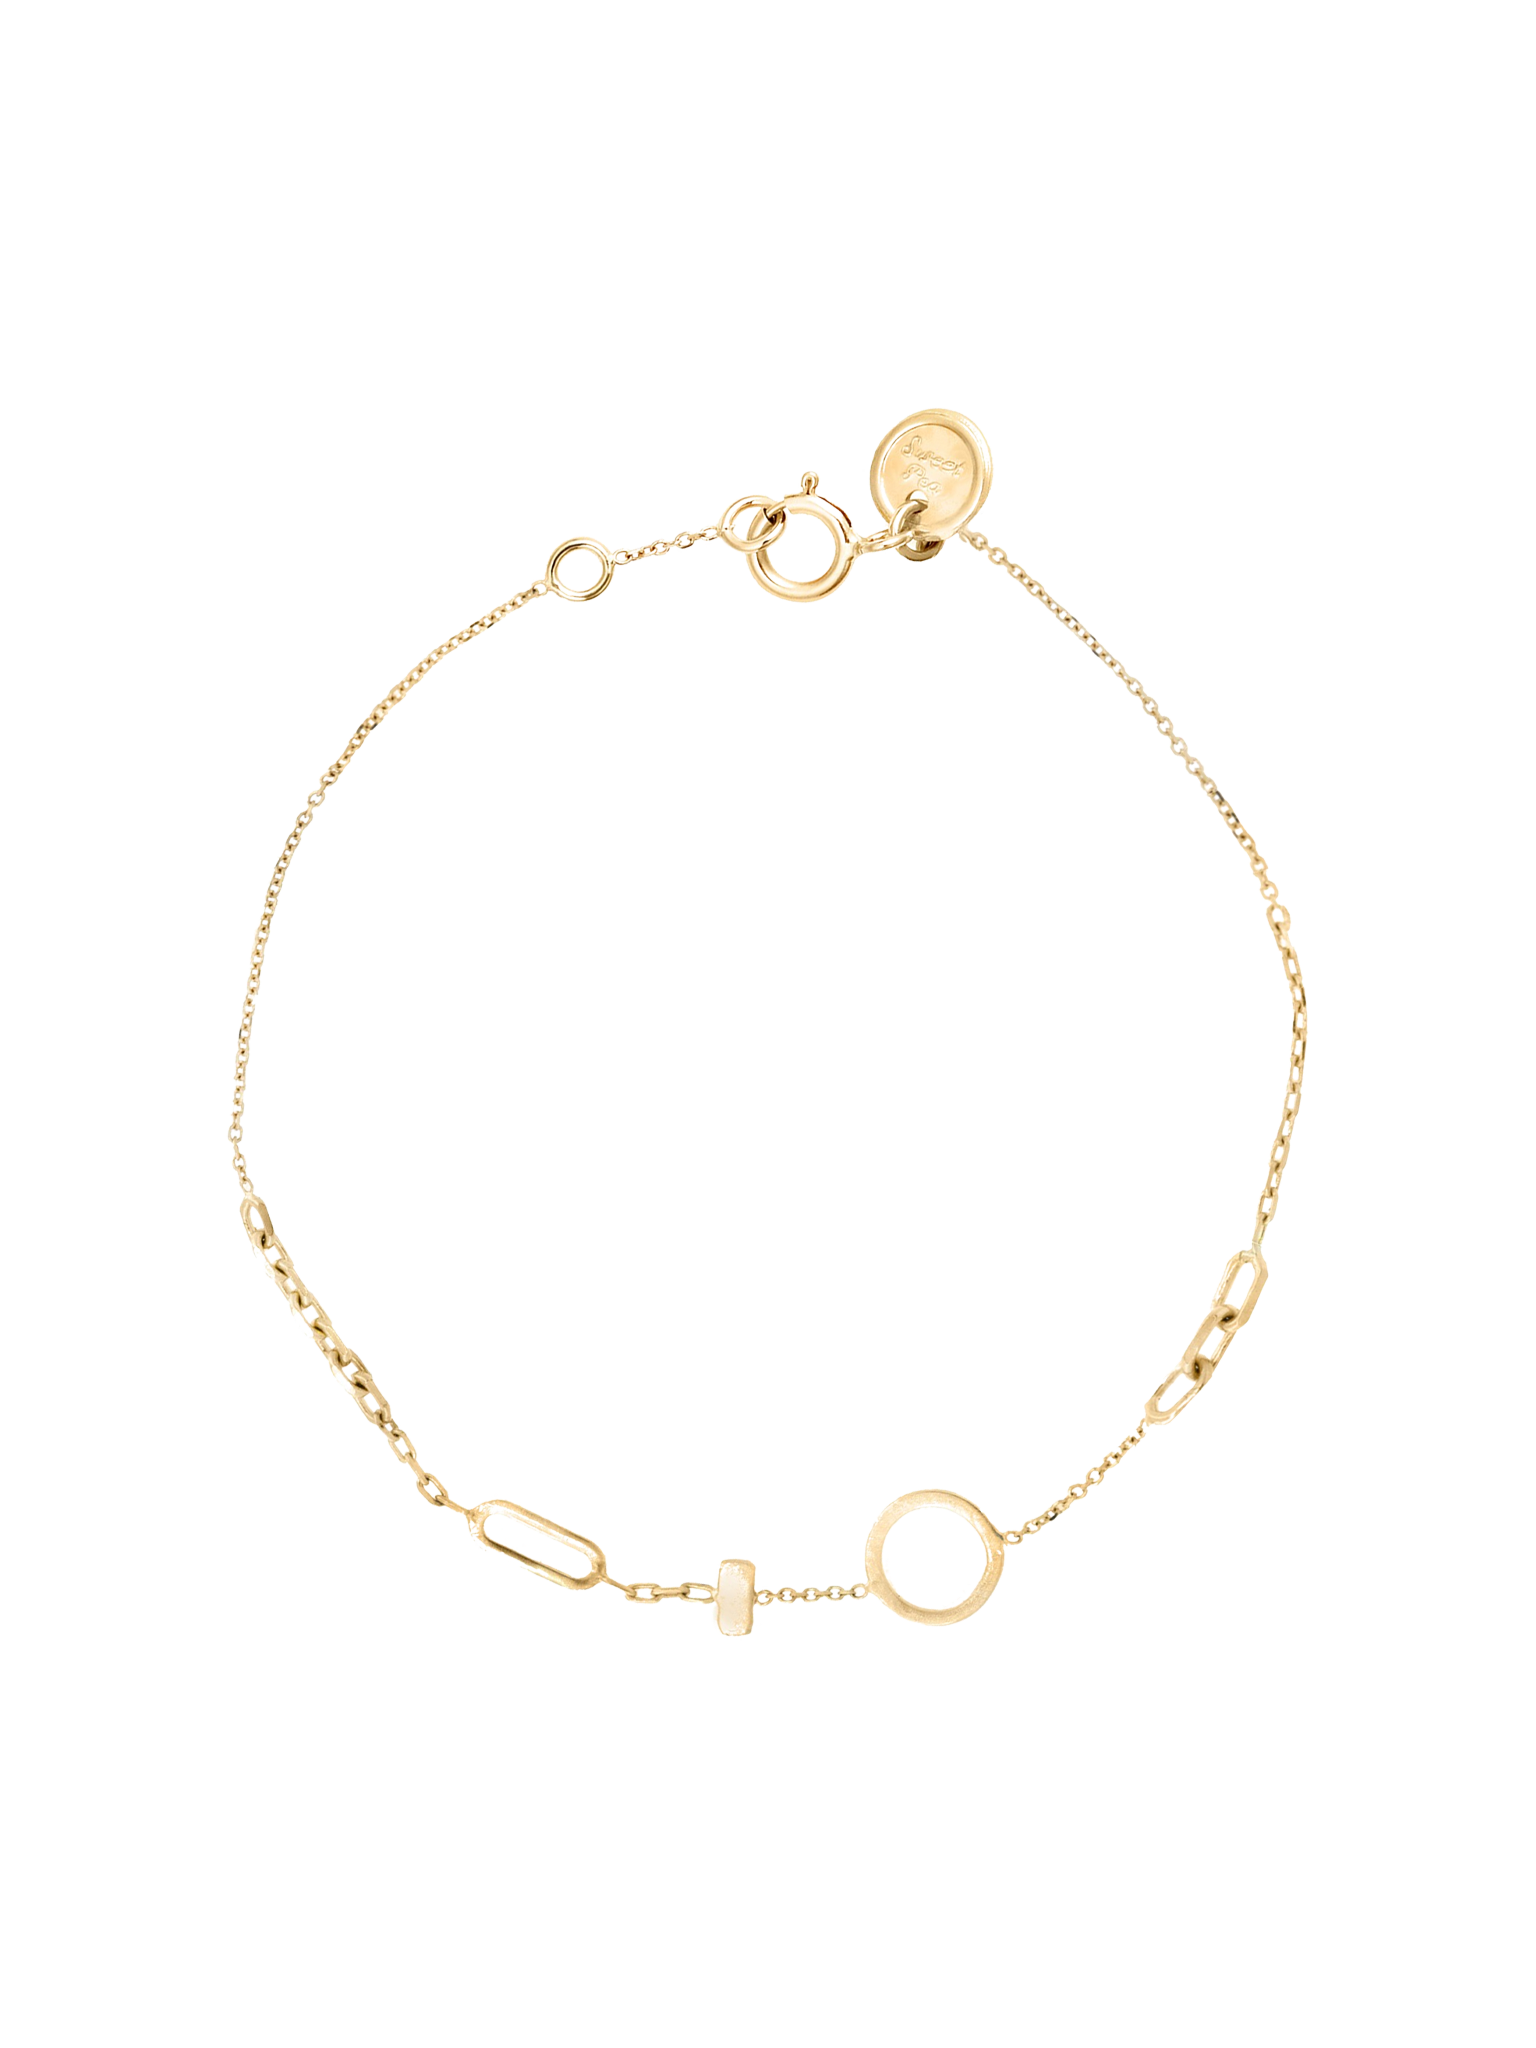 Chains galore bracelet